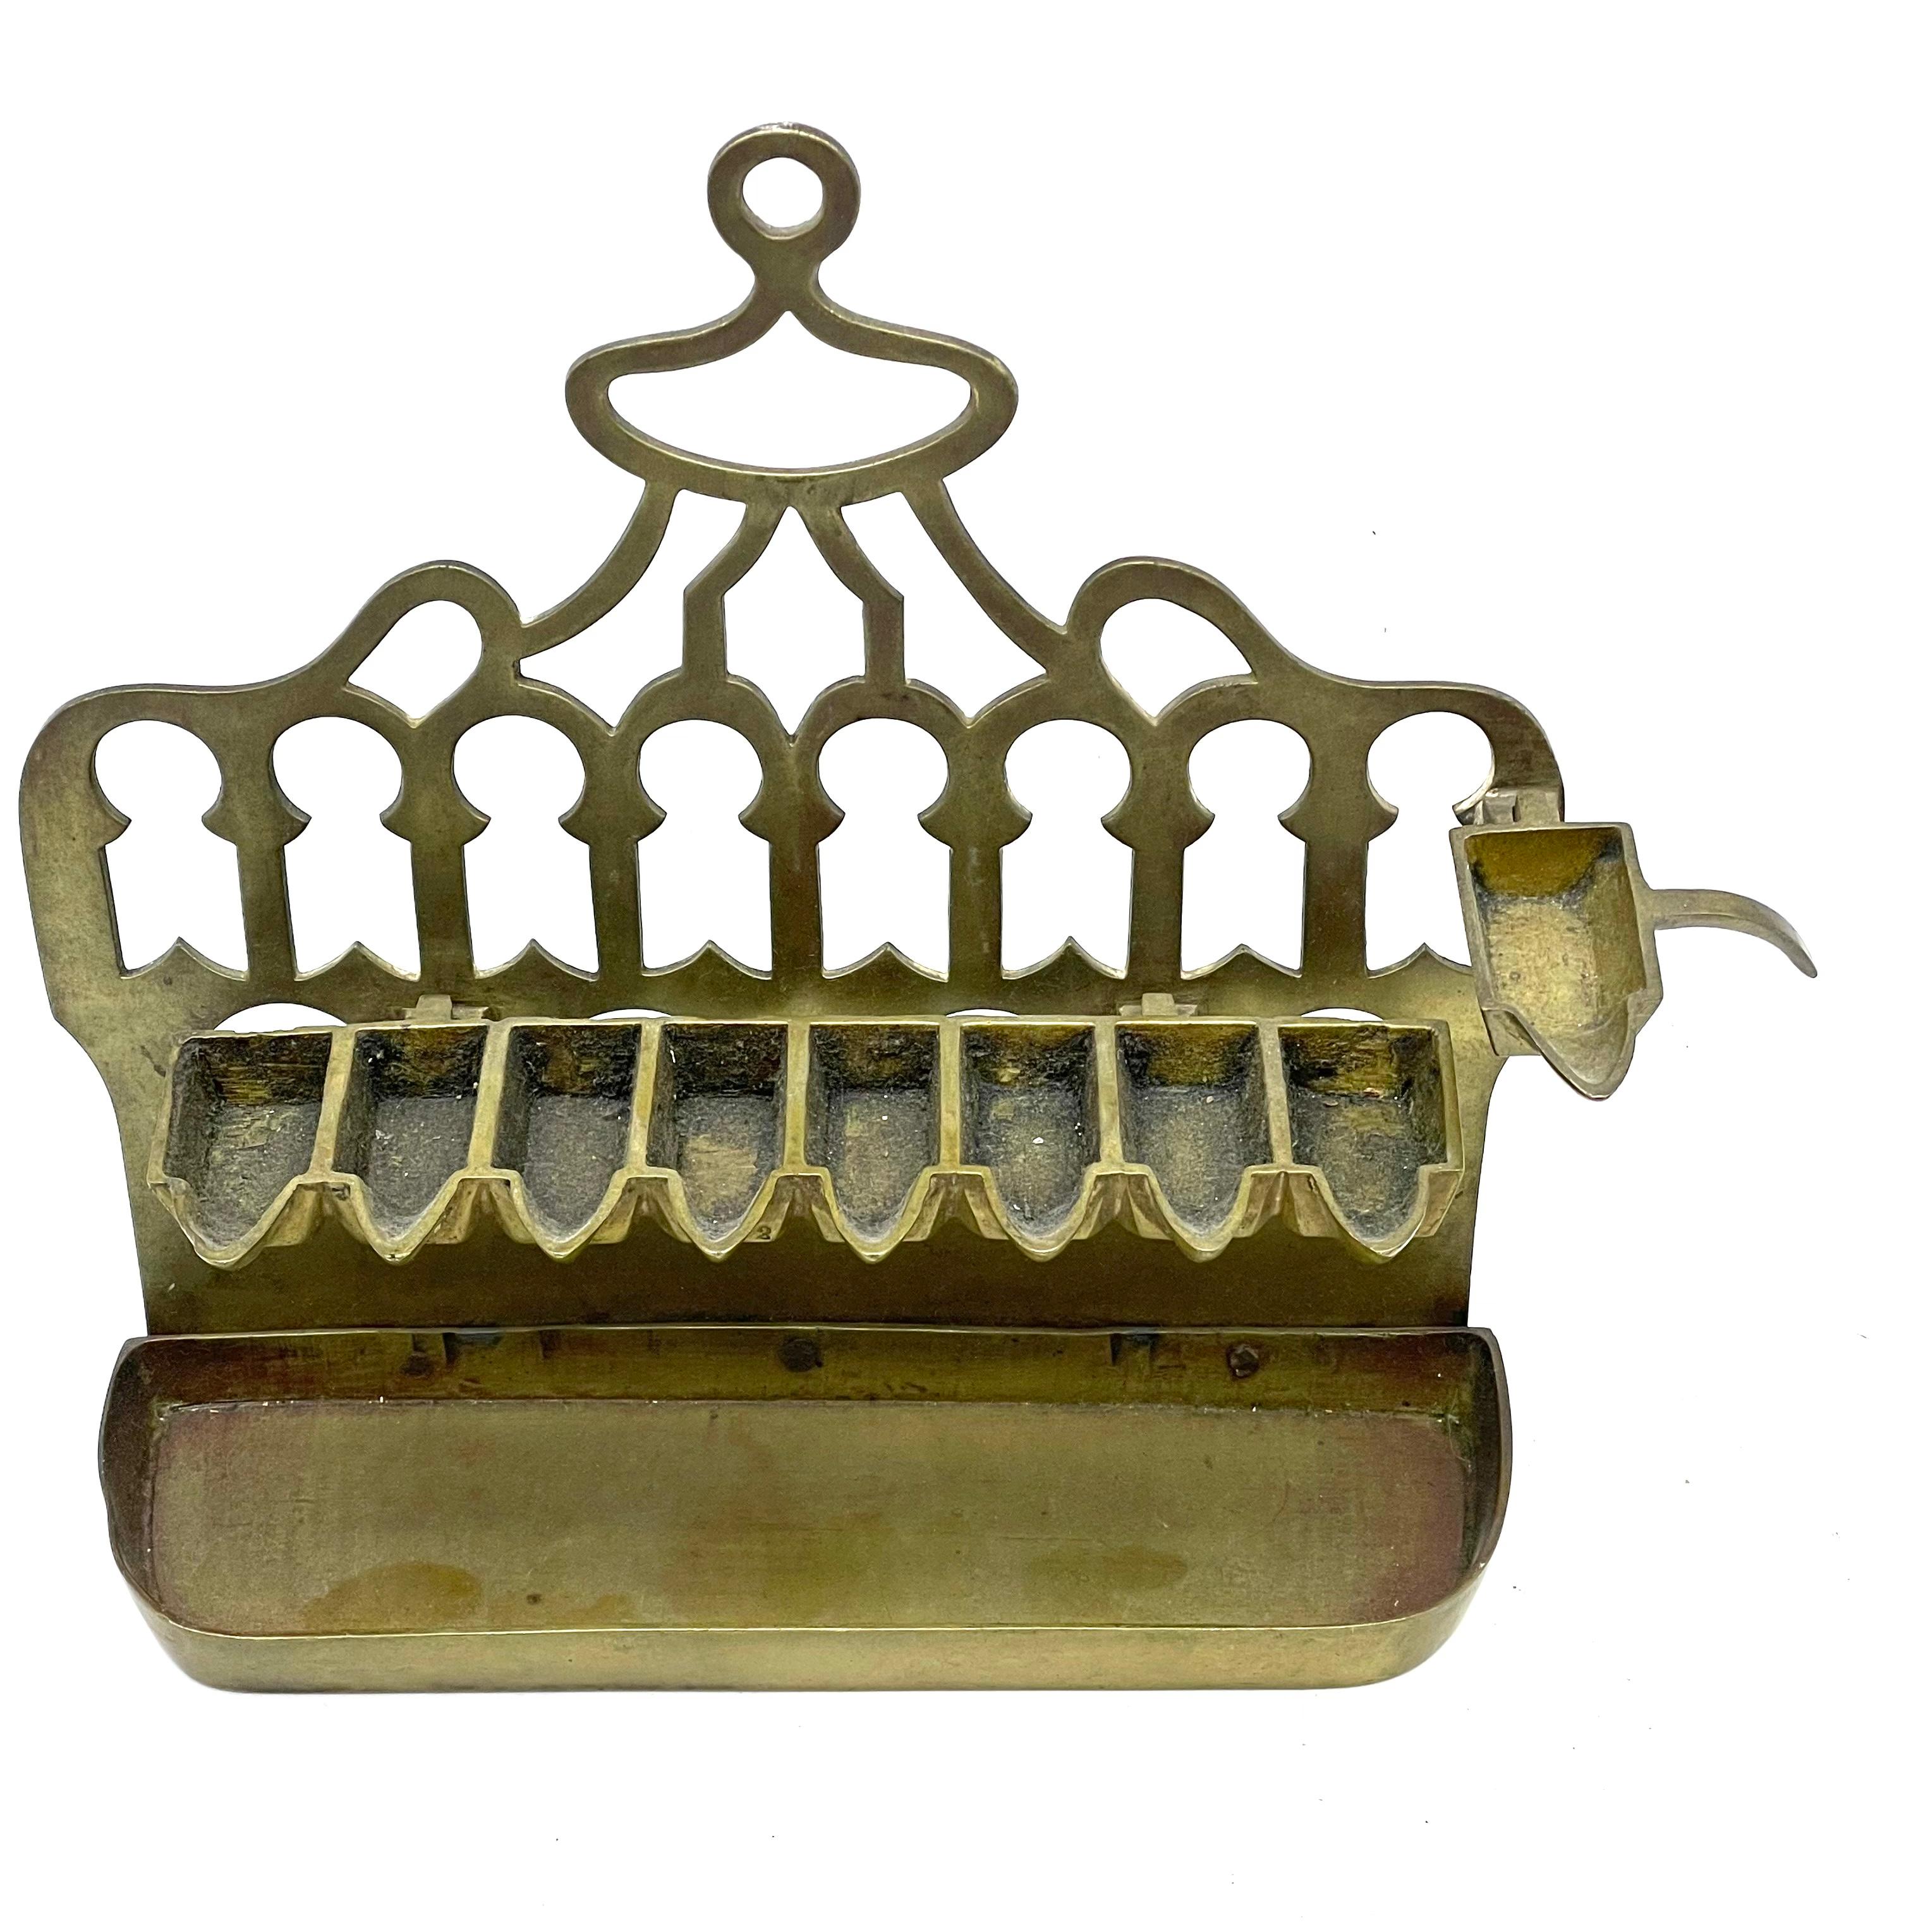 Eine Chanukka-Lampe aus Messingguss aus dem späten 19. Jahrhundert, hergestellt in Algerien. Die Lampe besteht aus drei zentralen Teilen: dem Korpus, einem Tablett für die Ölkerzen und einer Halterung für das Dienerlicht. Die Teile können zerlegt